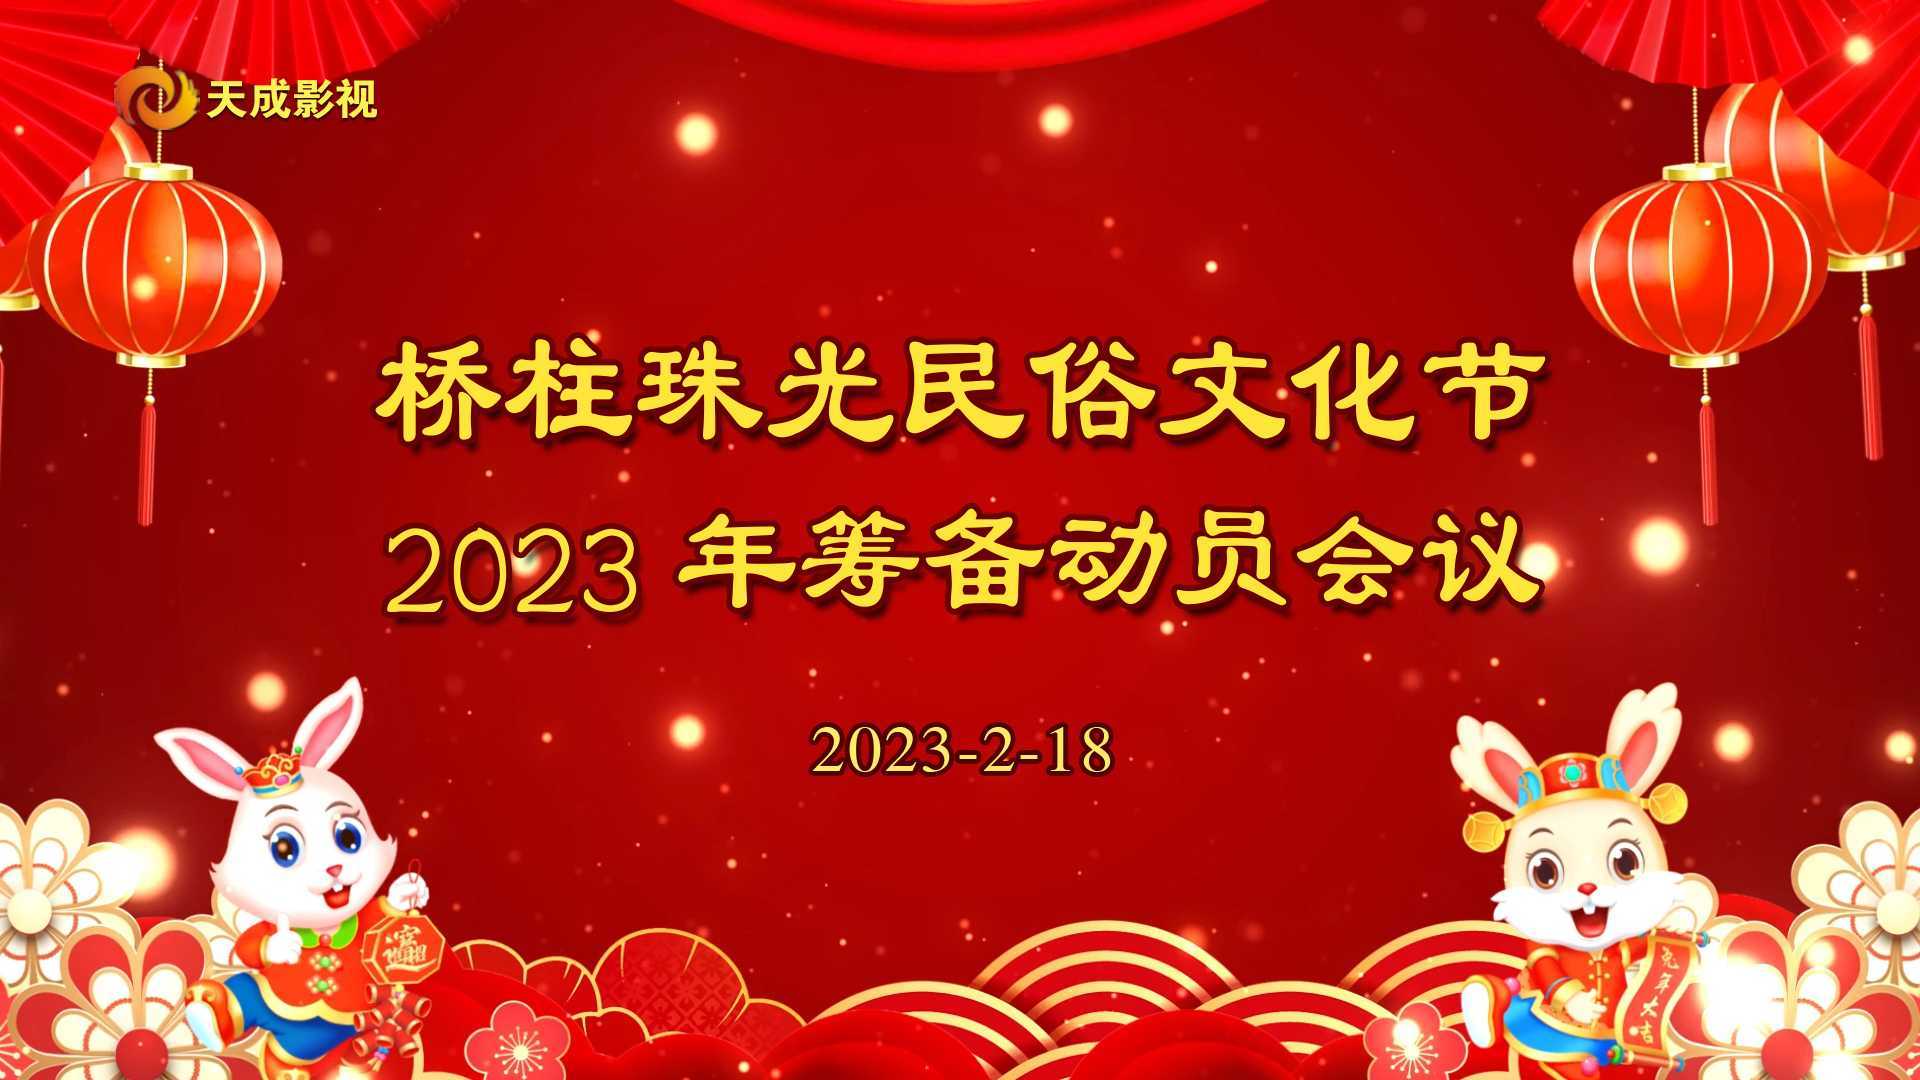 桥柱珠光民俗文化节2023年筹备动员会议